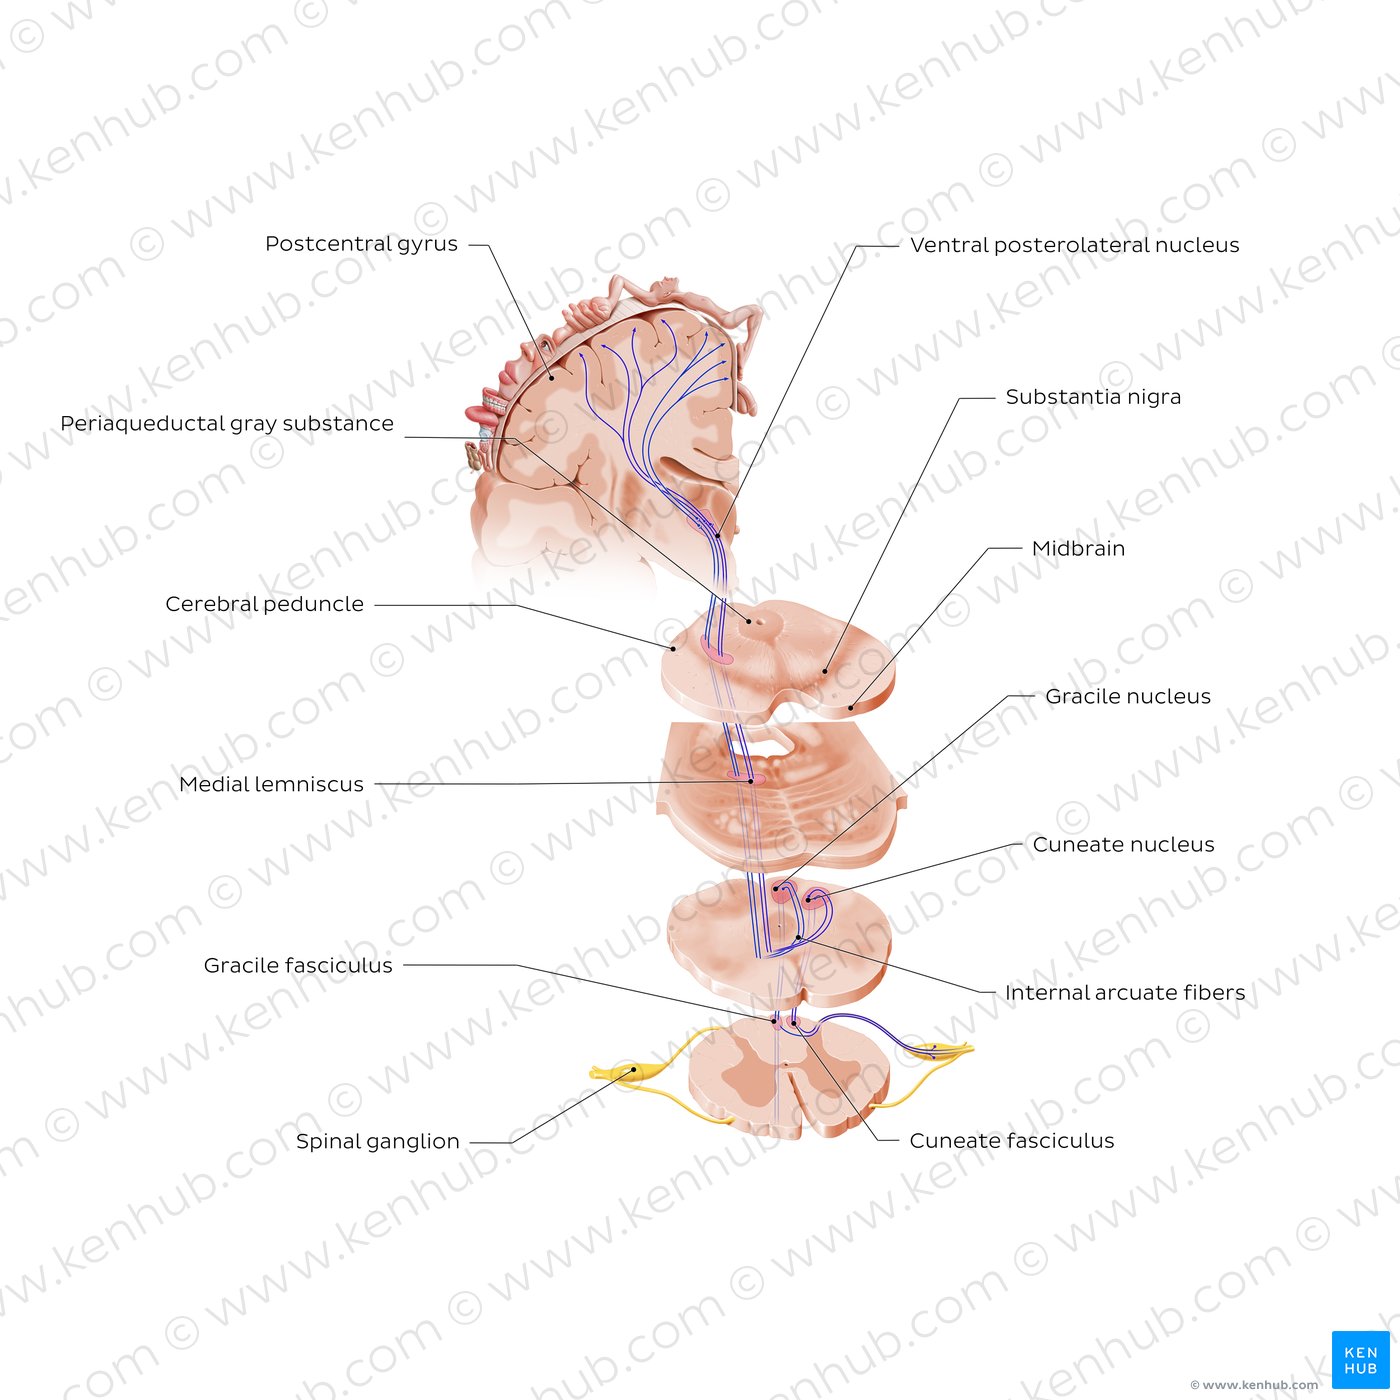 Dorsal column - Medial lemniscus pathway (PCML)